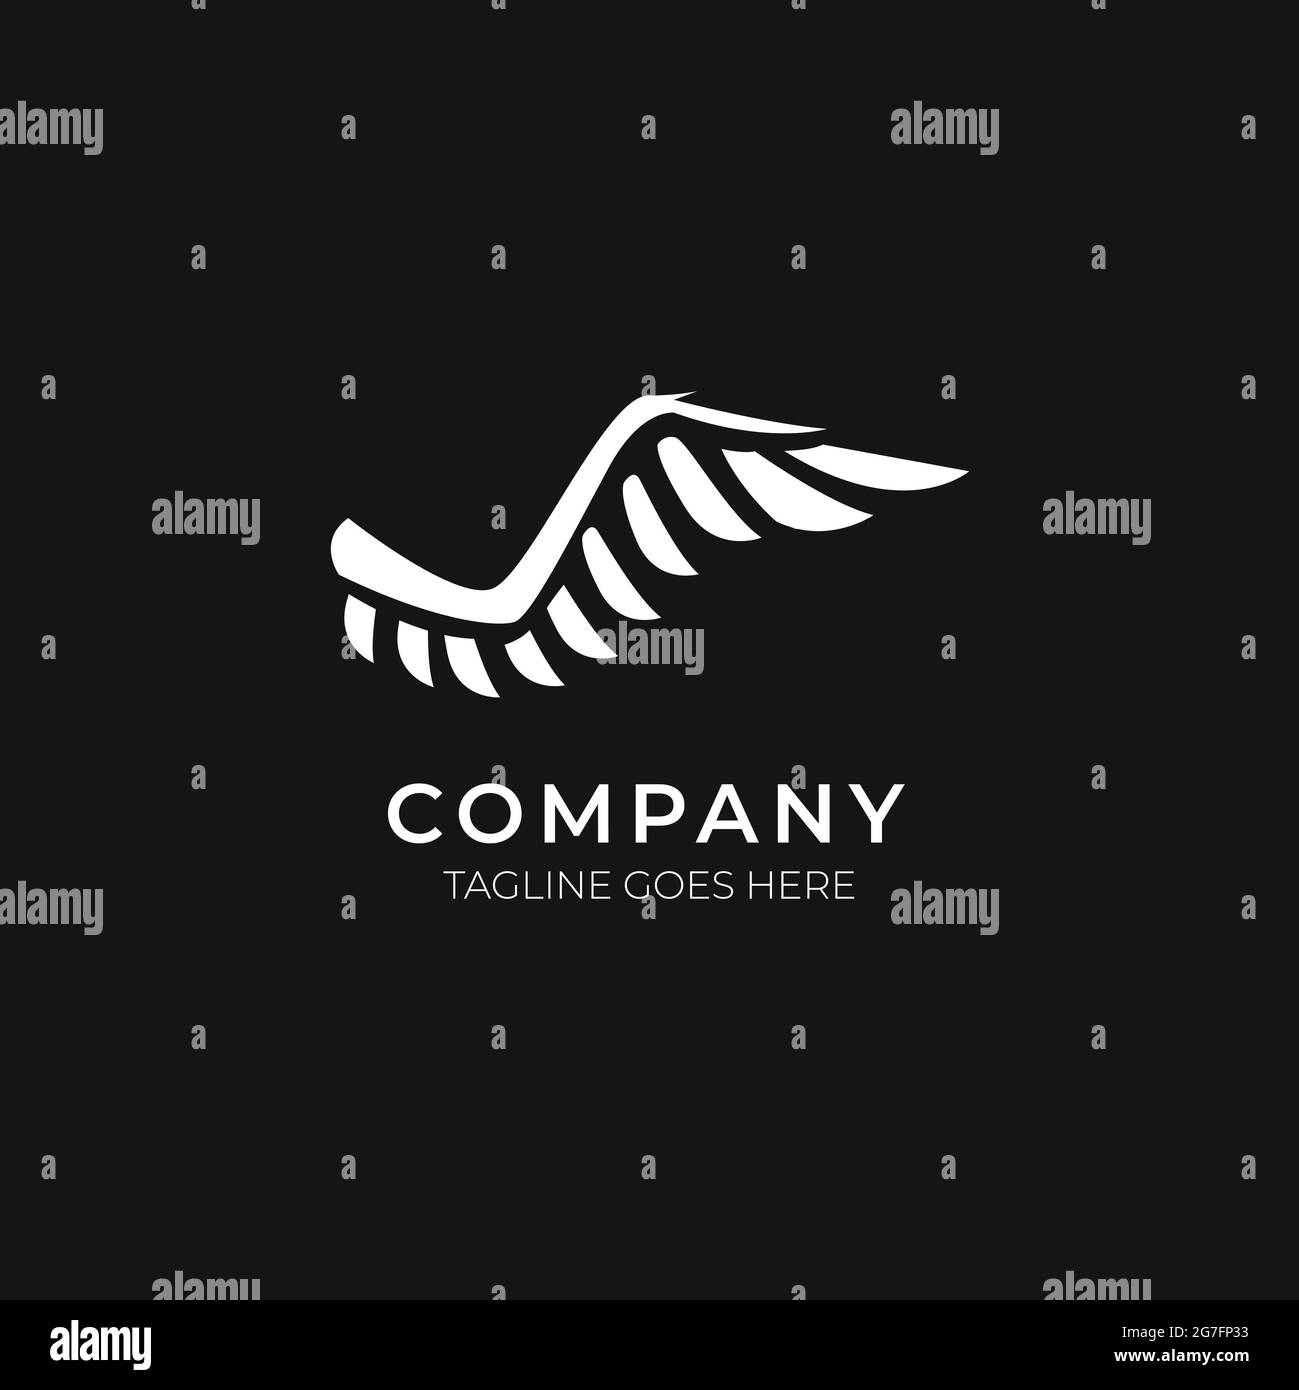 Le concept de logo d'illustration d'aile fonctionne bien pour n'importe quel type d'entreprise Banque D'Images